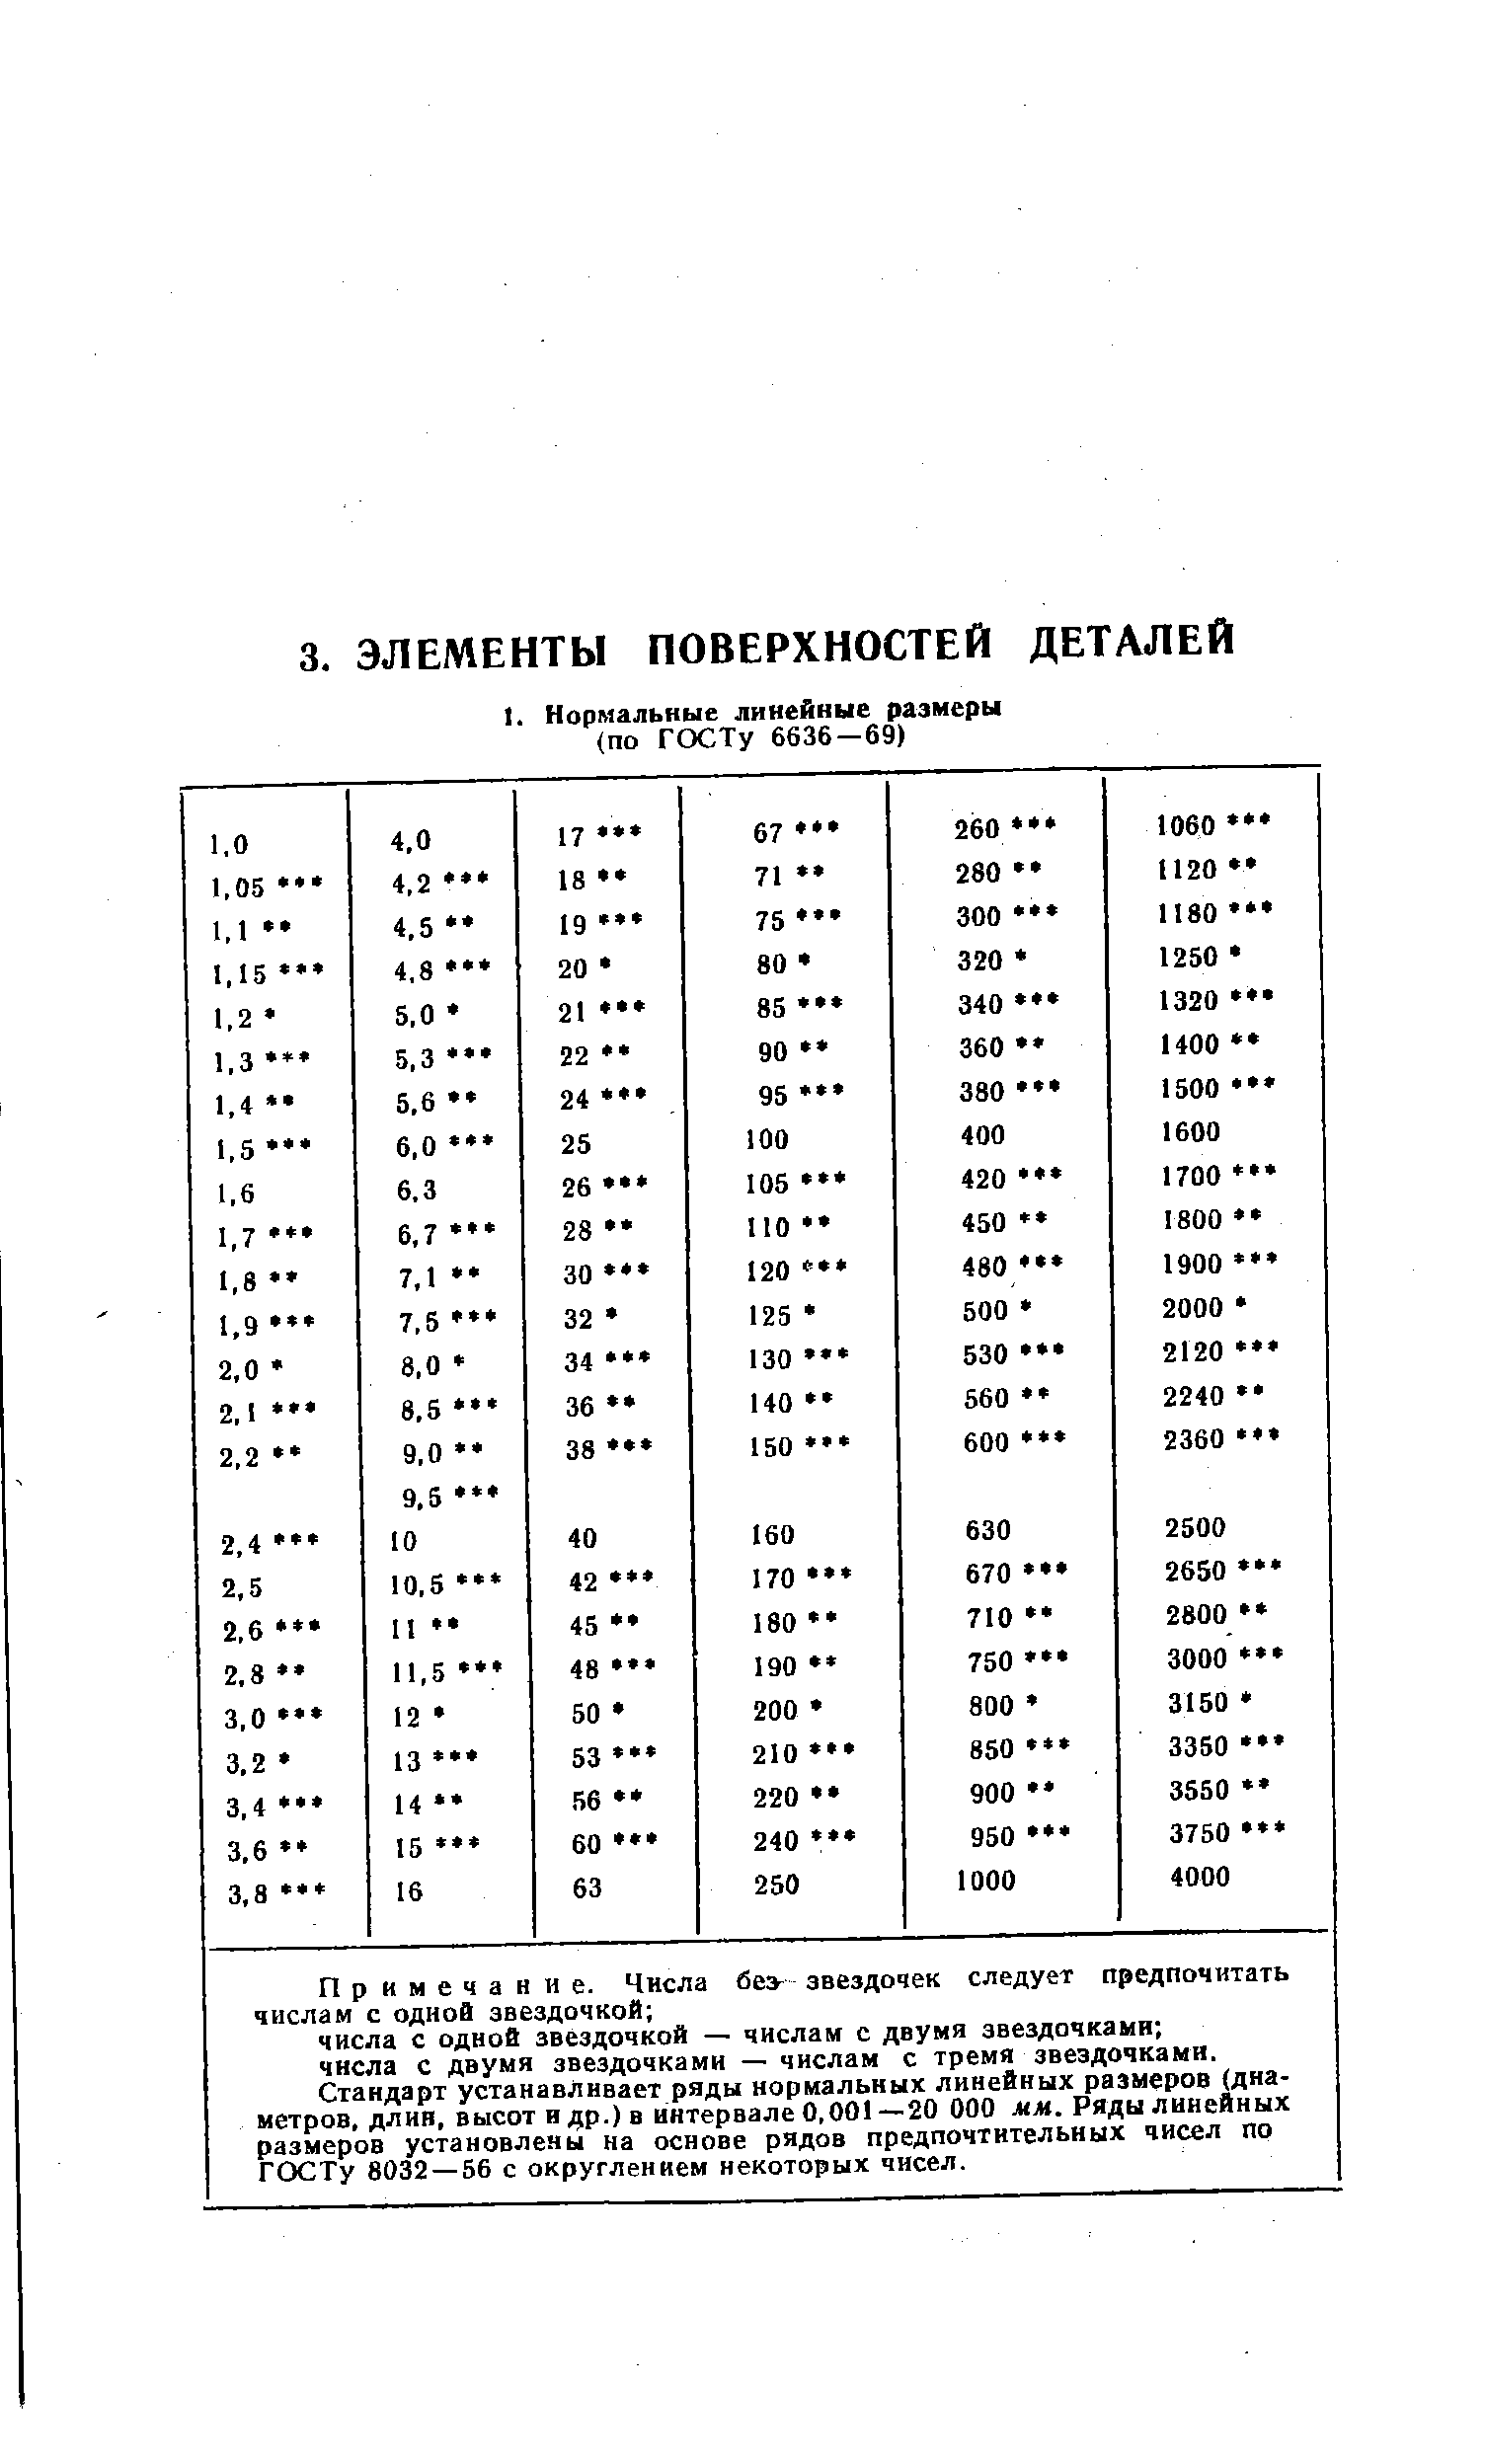 Стандарт устанавливает ряды нормальных линейных размеров (дна метров, длин, высот и др.) в интервале 0,001 —20 000 мм. Ряды линейных размеров установлены на основе рядов предпочтительных чисел по ГСХ2Ту 8032 — 56 с округлением некоторых чисел.
